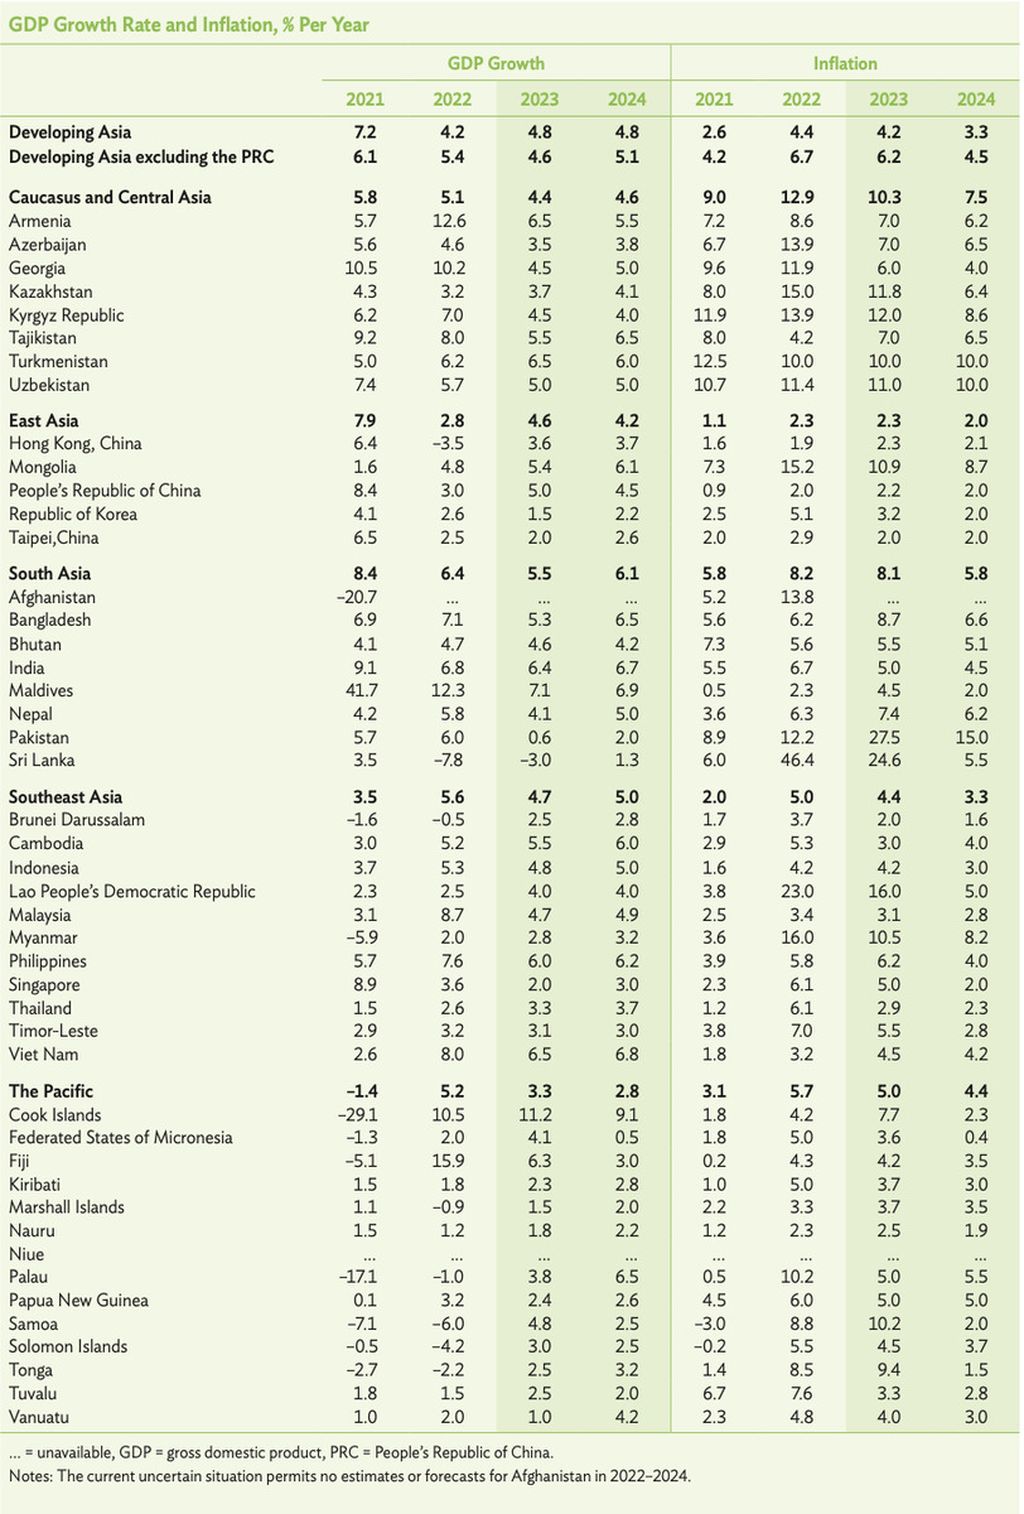 Pertumbuhan ekonomi dan inflasi negara-negara di Asia